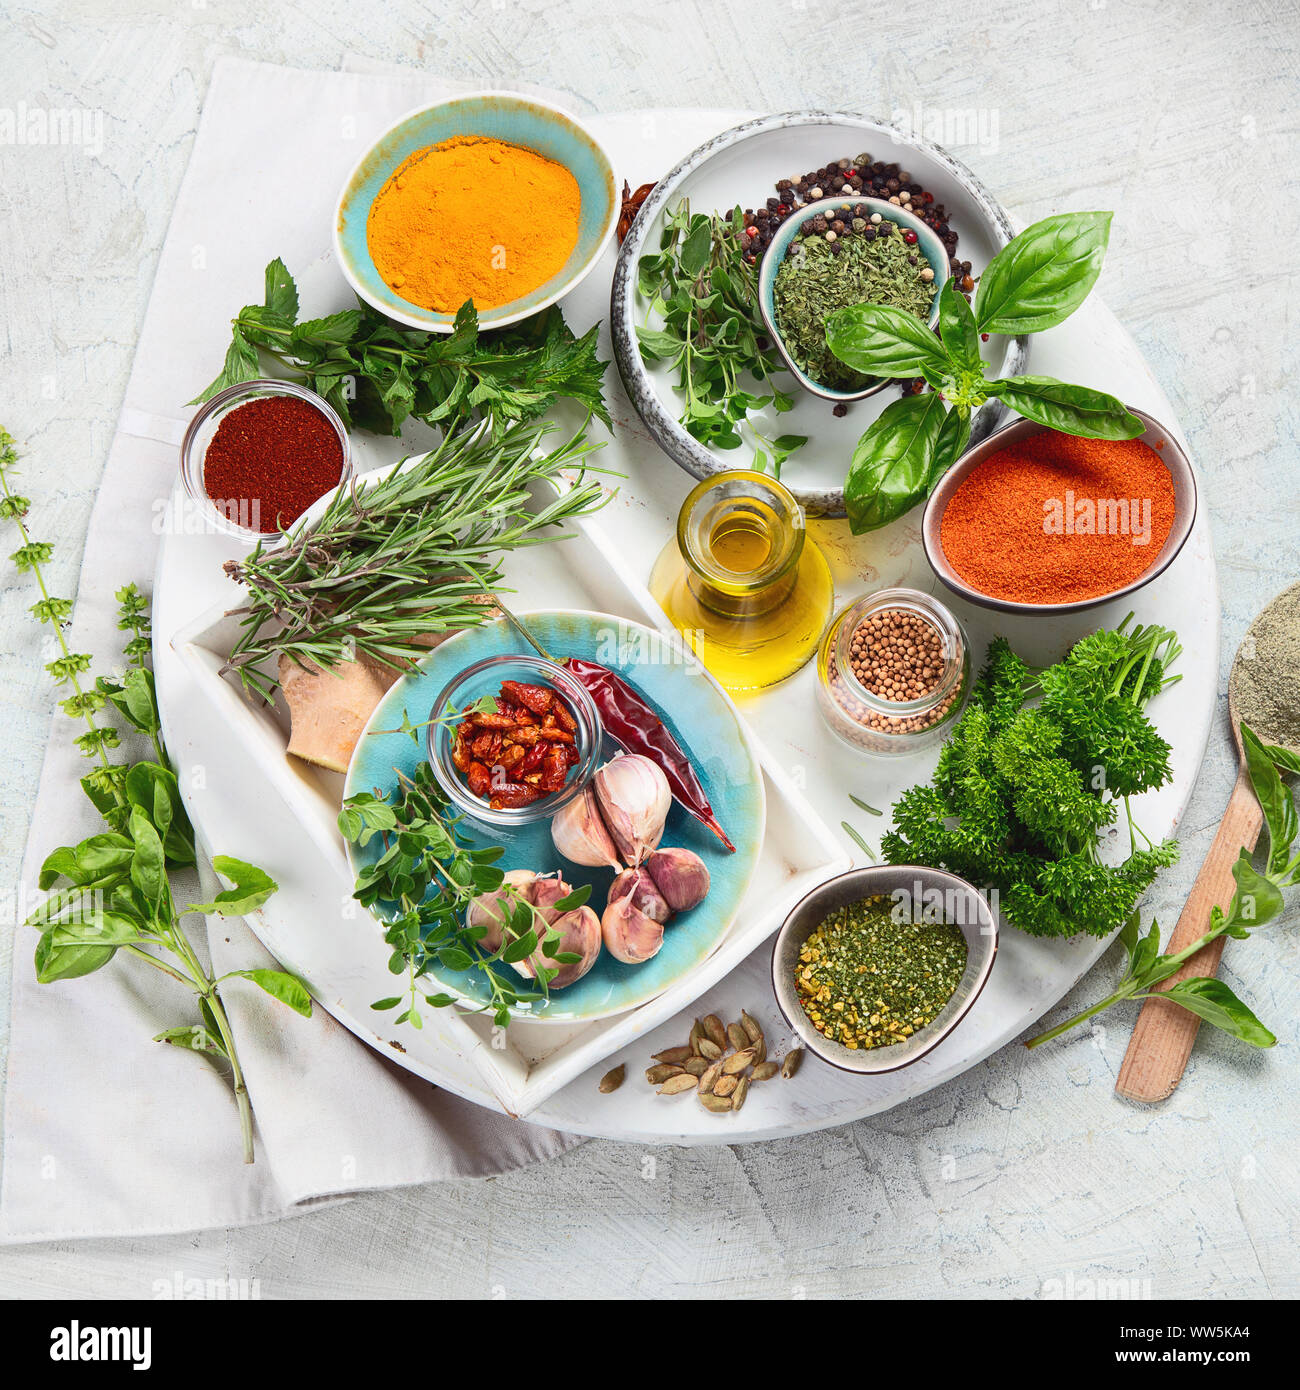 Fresca e le erbe aromatiche essiccate e le spezie. Cucinare, mangiare sano concetto. Vista superiore Foto Stock